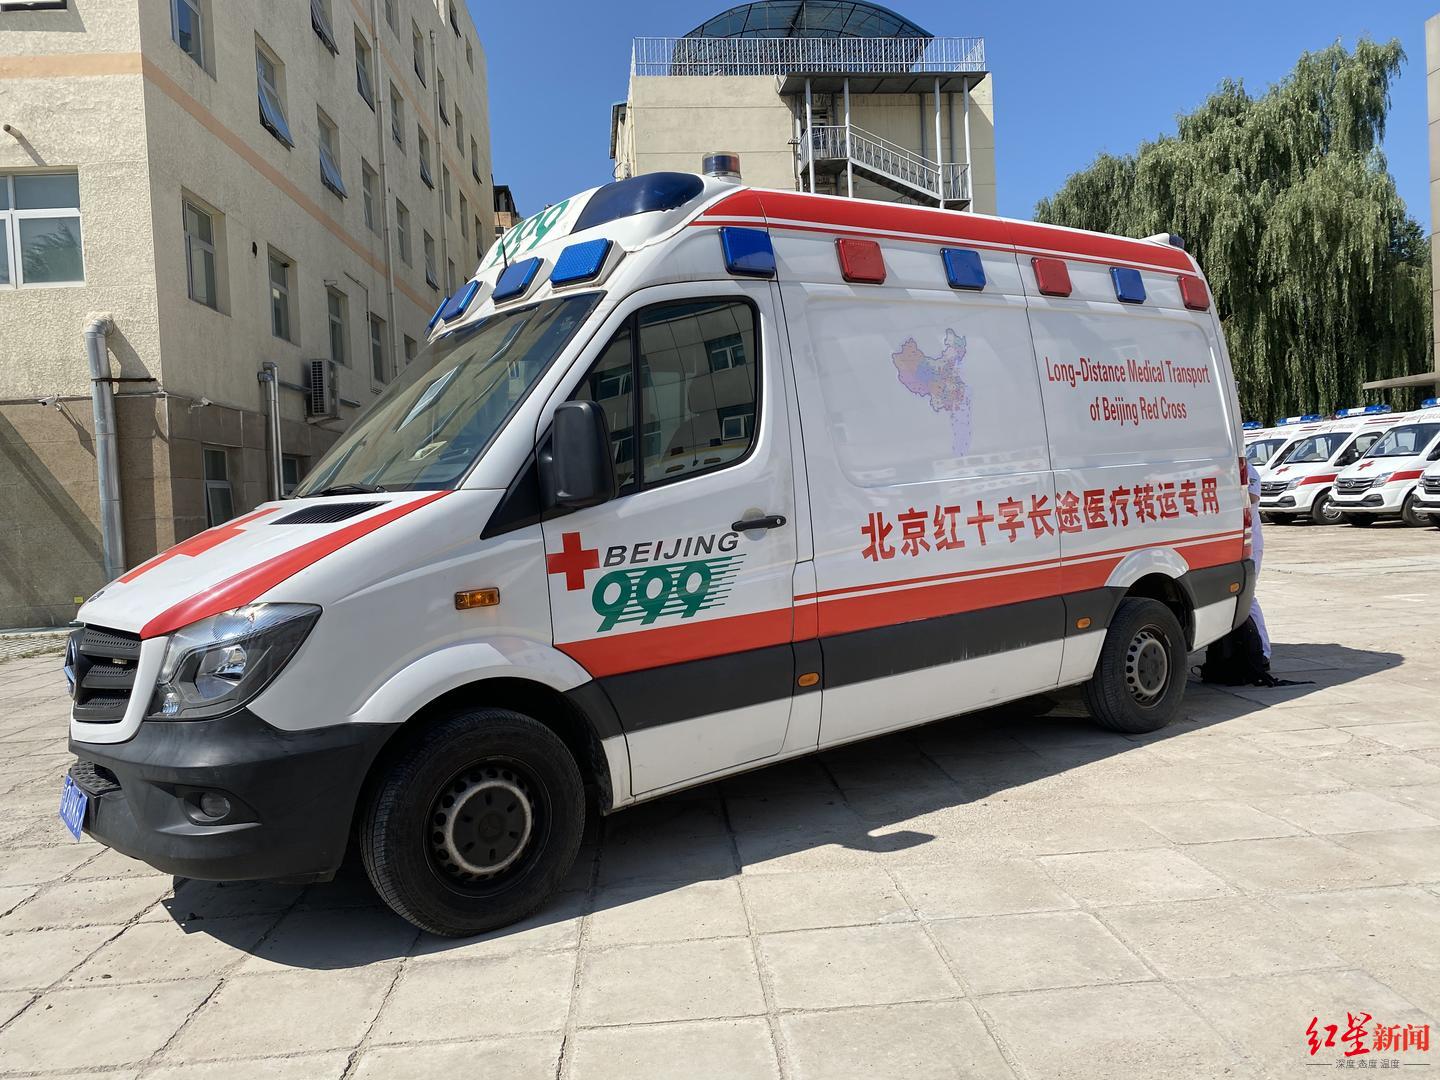 北京999急救中心图片